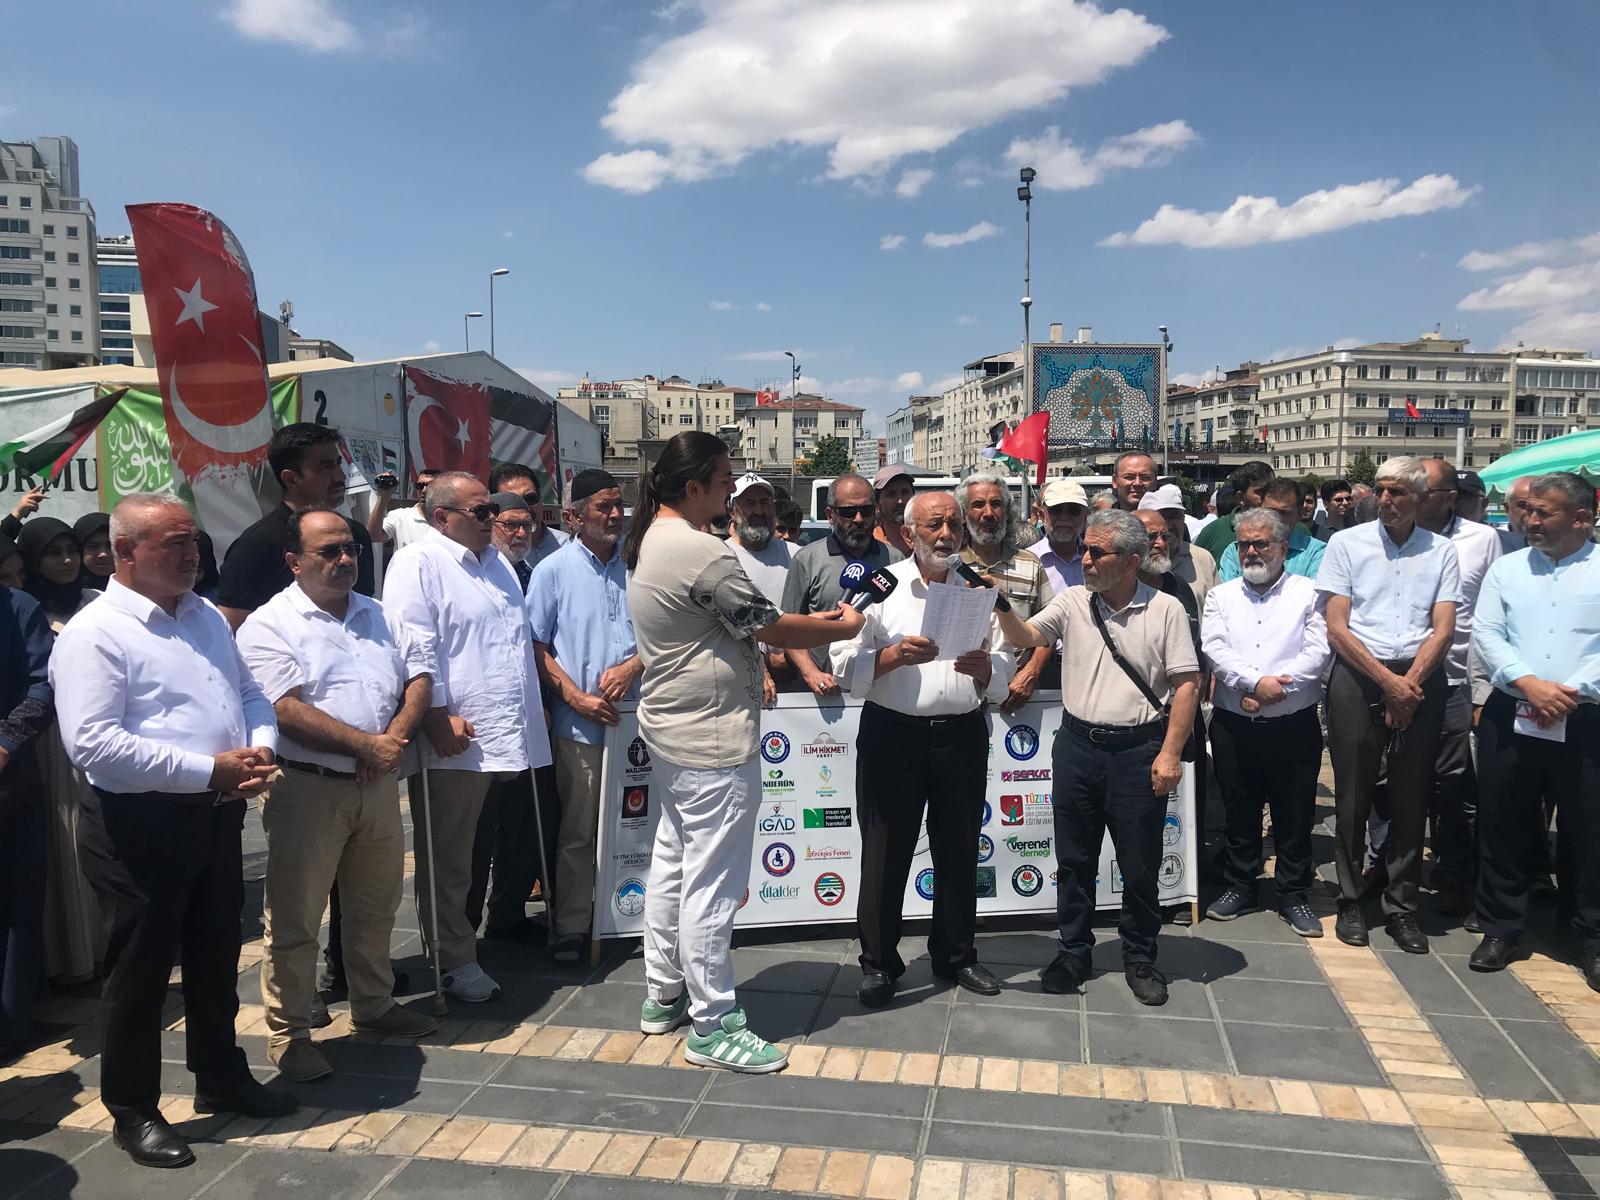 Gönüllü Kültür Kuruluşları Derneği Başkanı Taş, “İsrail ordusunda görevli Türk vatandaşlarının ülkemize dönmesi için çağrıda bulunulmalı”